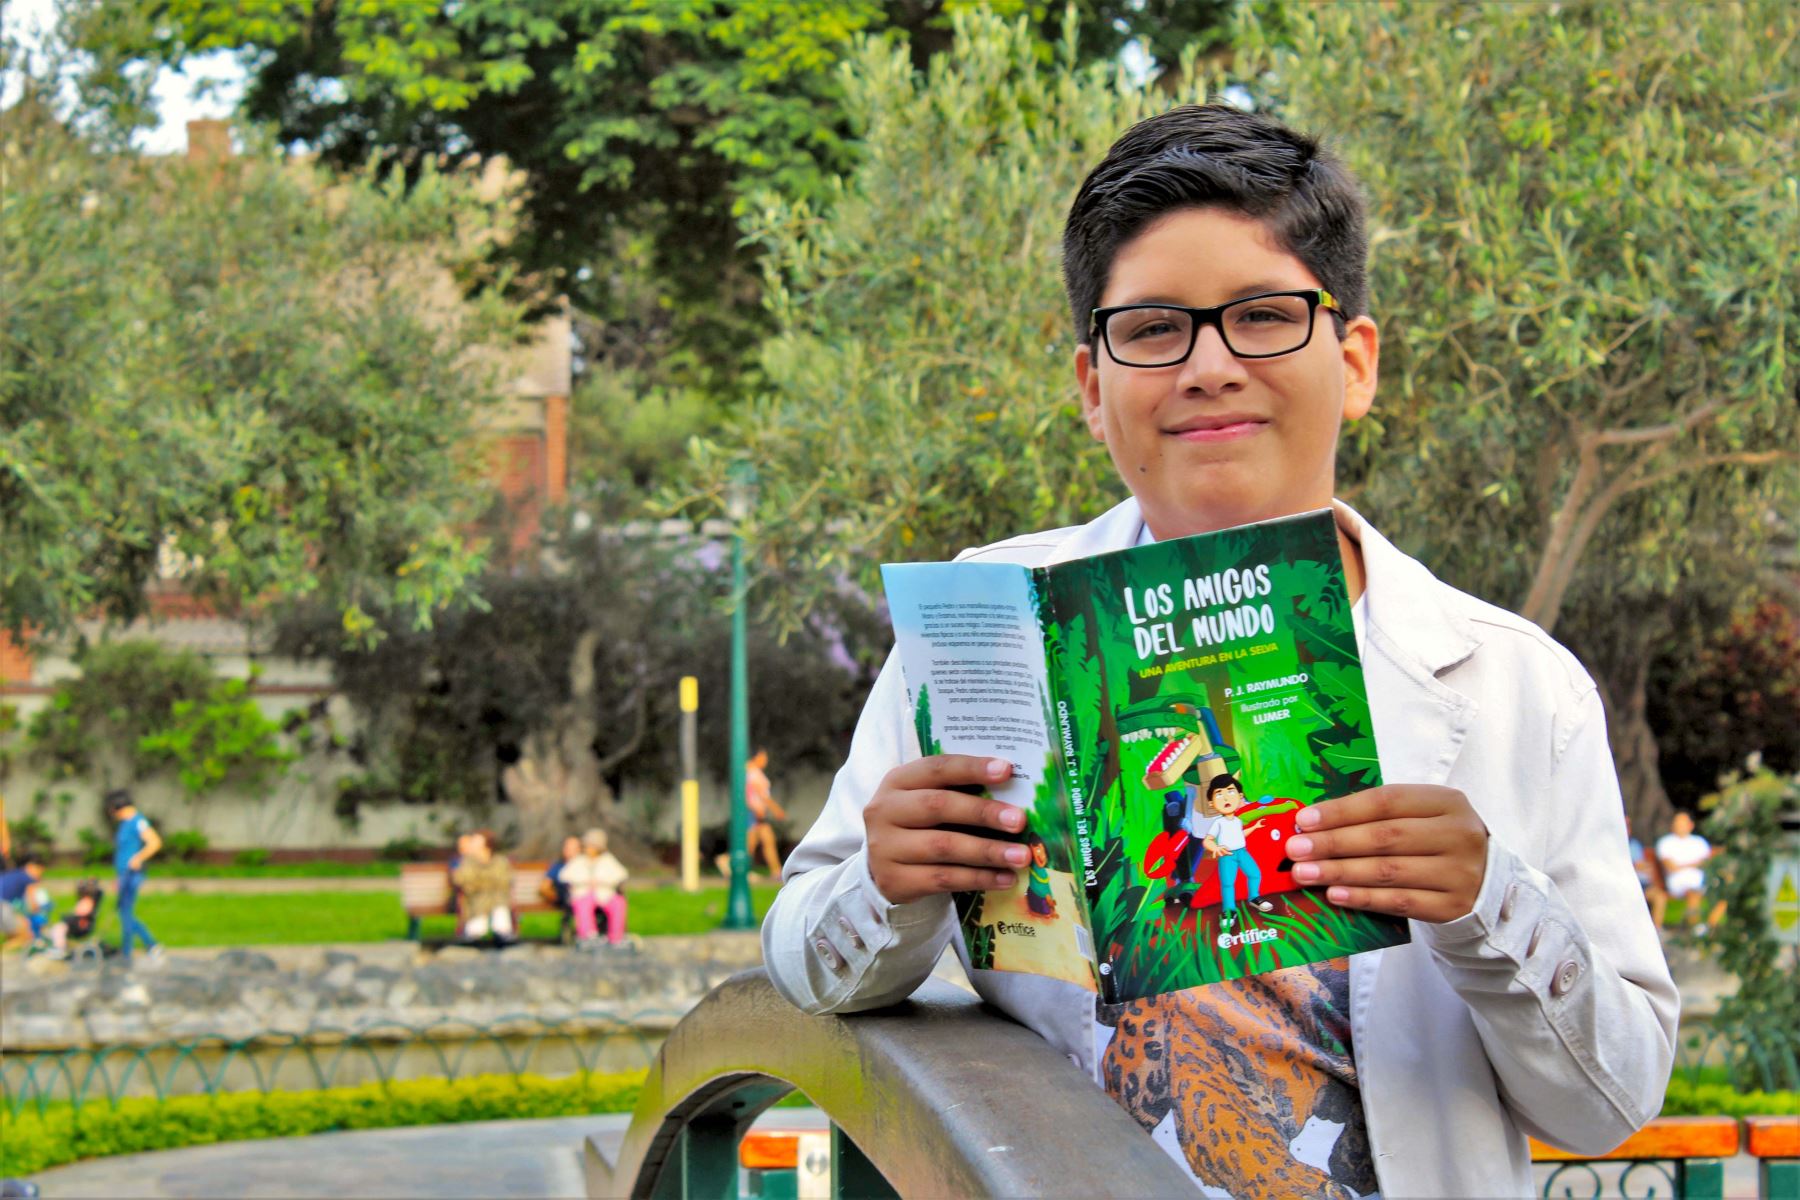 Presentan libro infantil "Los amigos del mundo" de Pedro José Raymundo